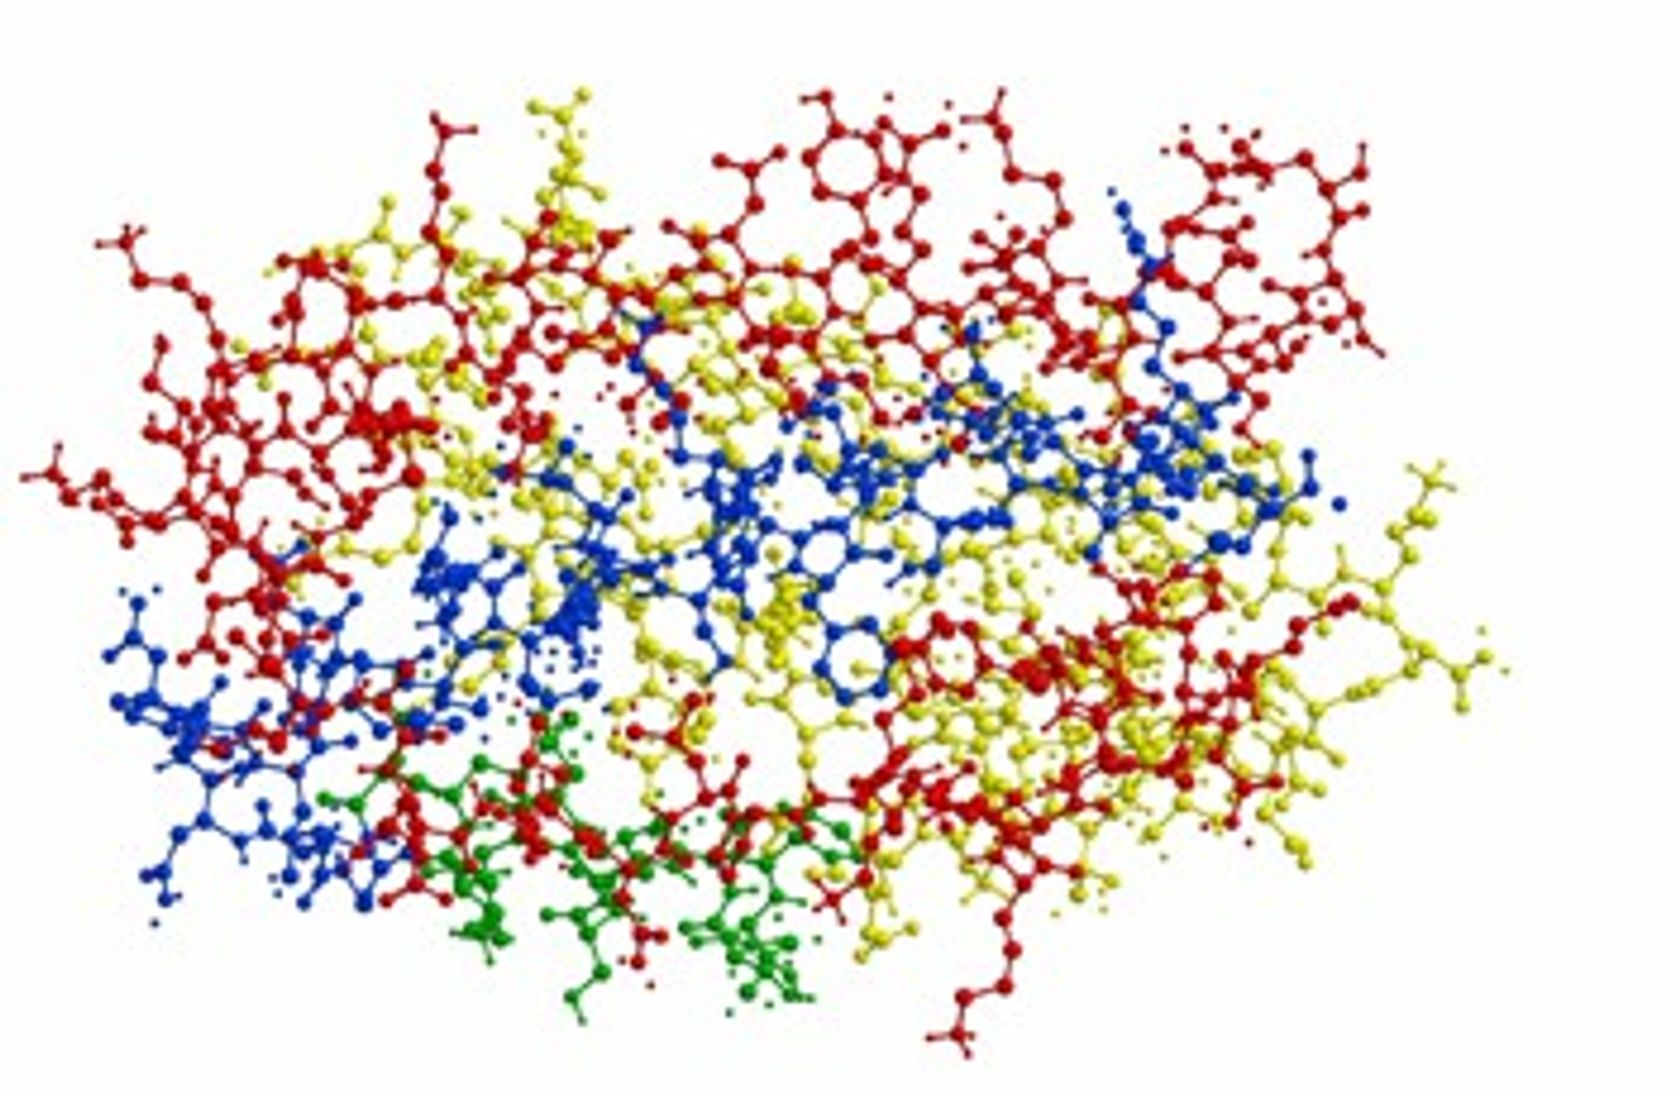 Gewirr von Molekülgittern in rot, gelb, blau, grün.